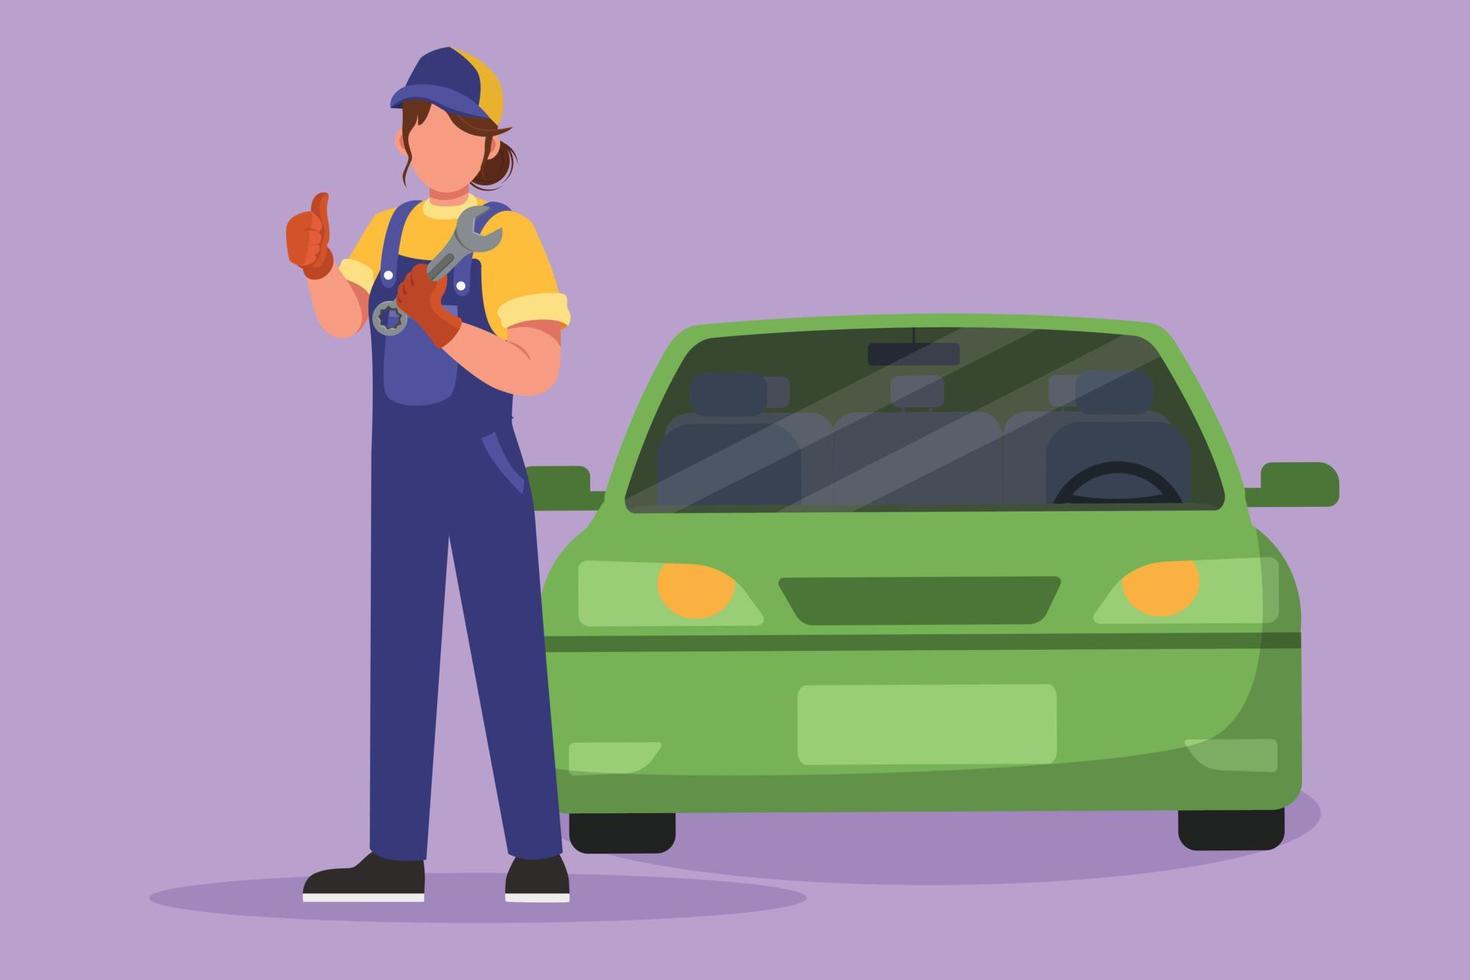 Cartoon Flat Style Drawing Mechaniker vor dem Auto mit Daumen nach oben Geste stehen, Schraubenschlüssel halten, um Wartungsarbeiten am Fahrzeugmotor oder Transport durchzuführen. Grafikdesign-Vektorillustration vektor